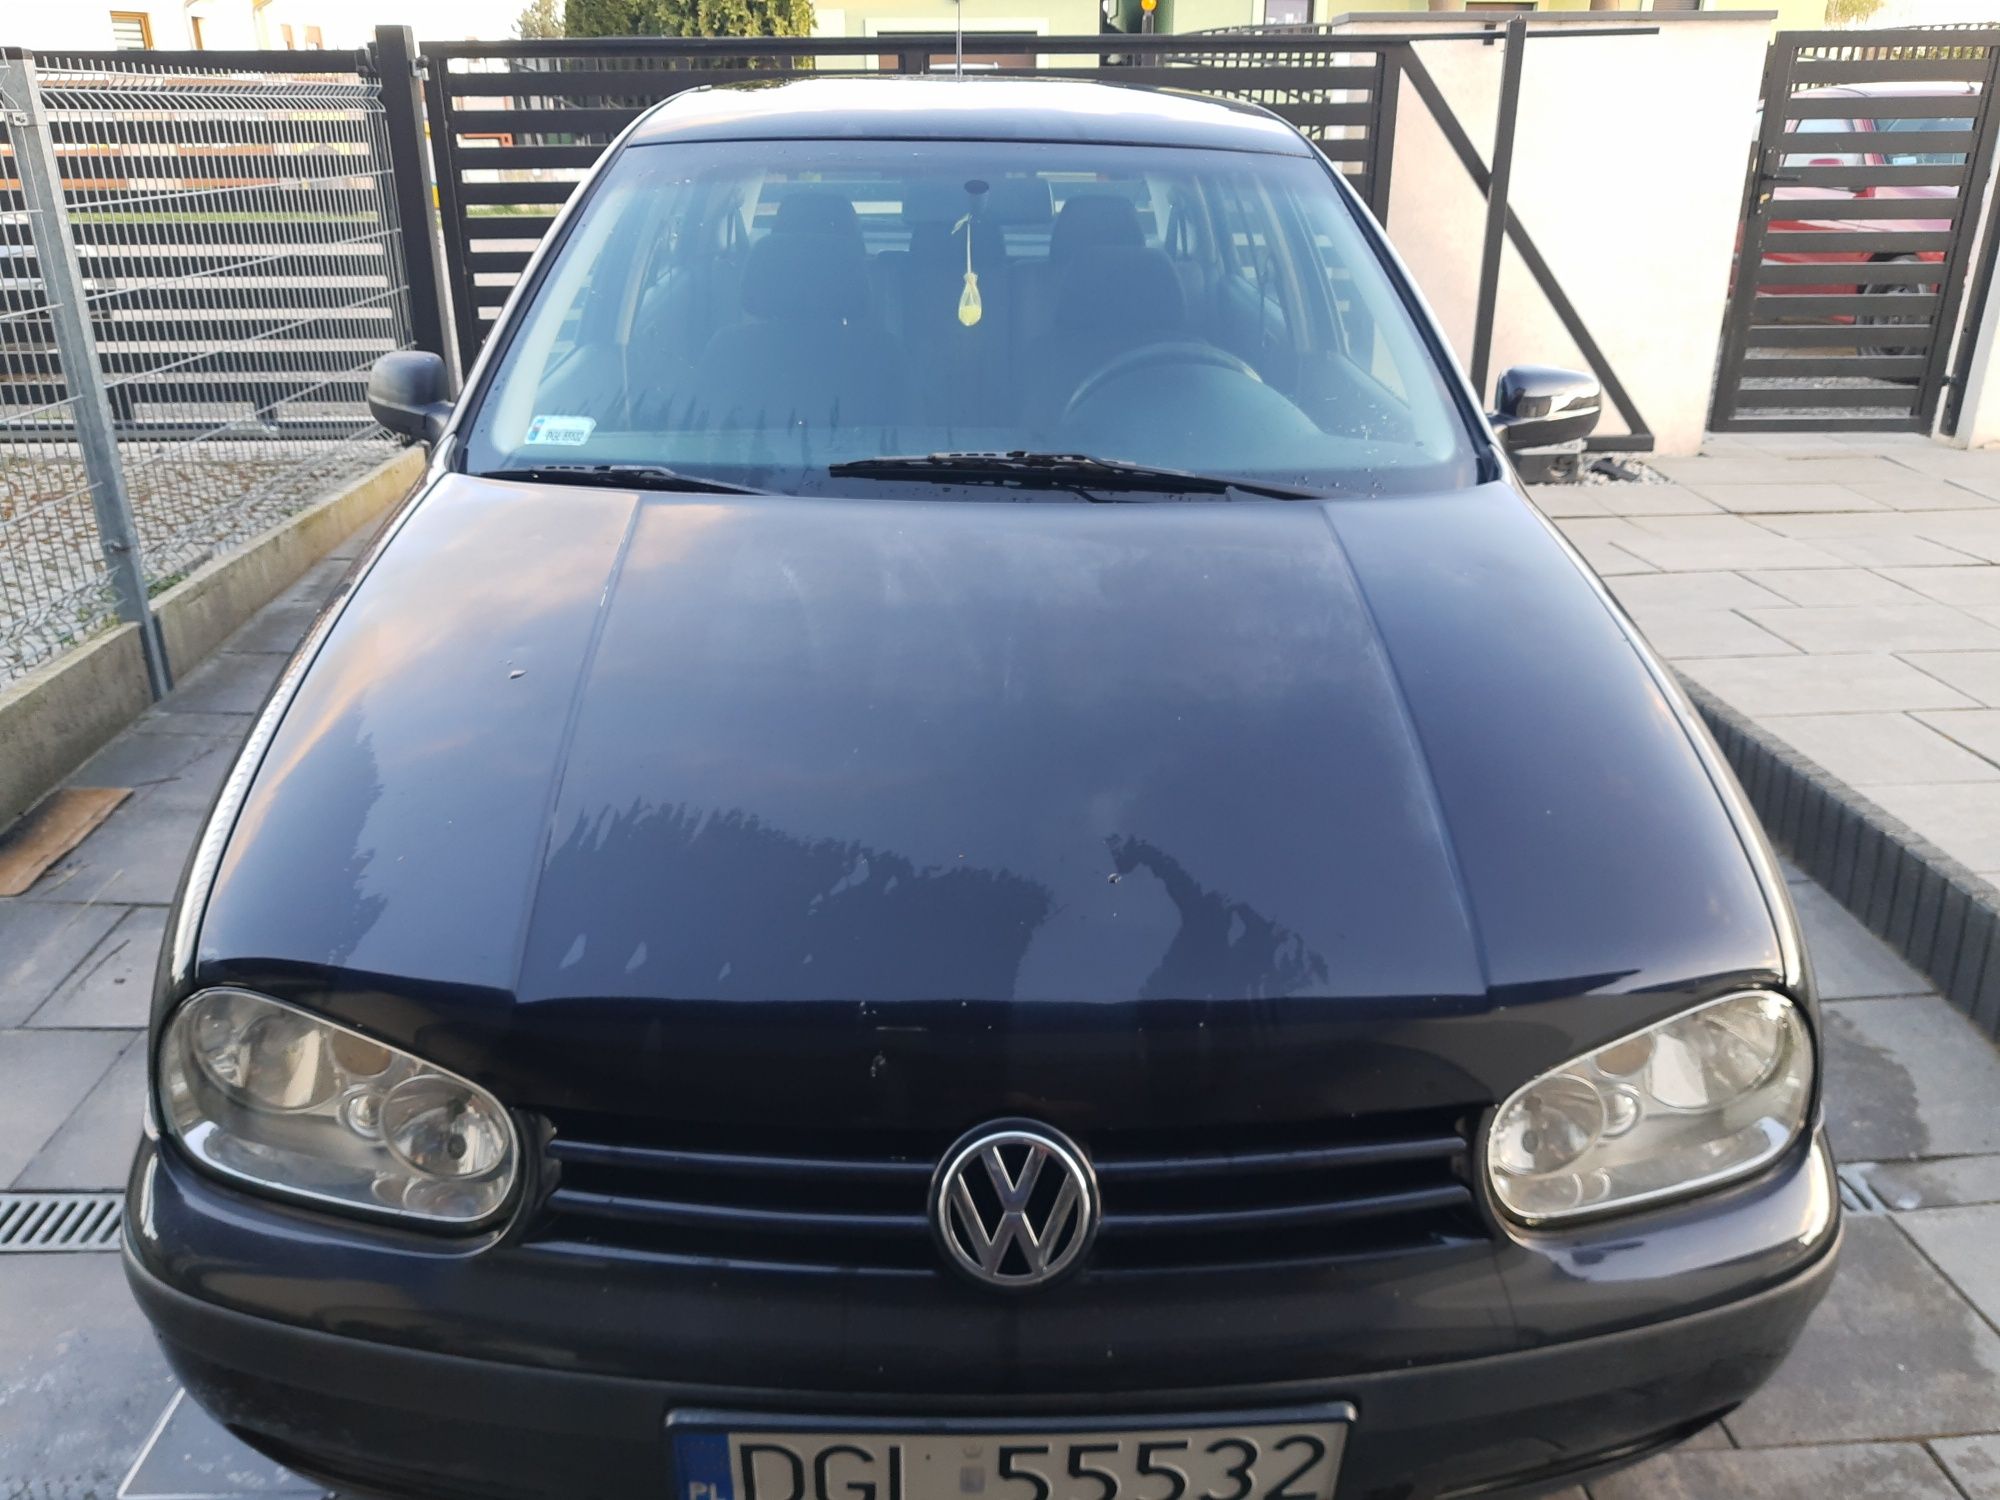 Volkswagen Golf 4, 1.4 benzyna, ładny, zadbany, klimatyzacja